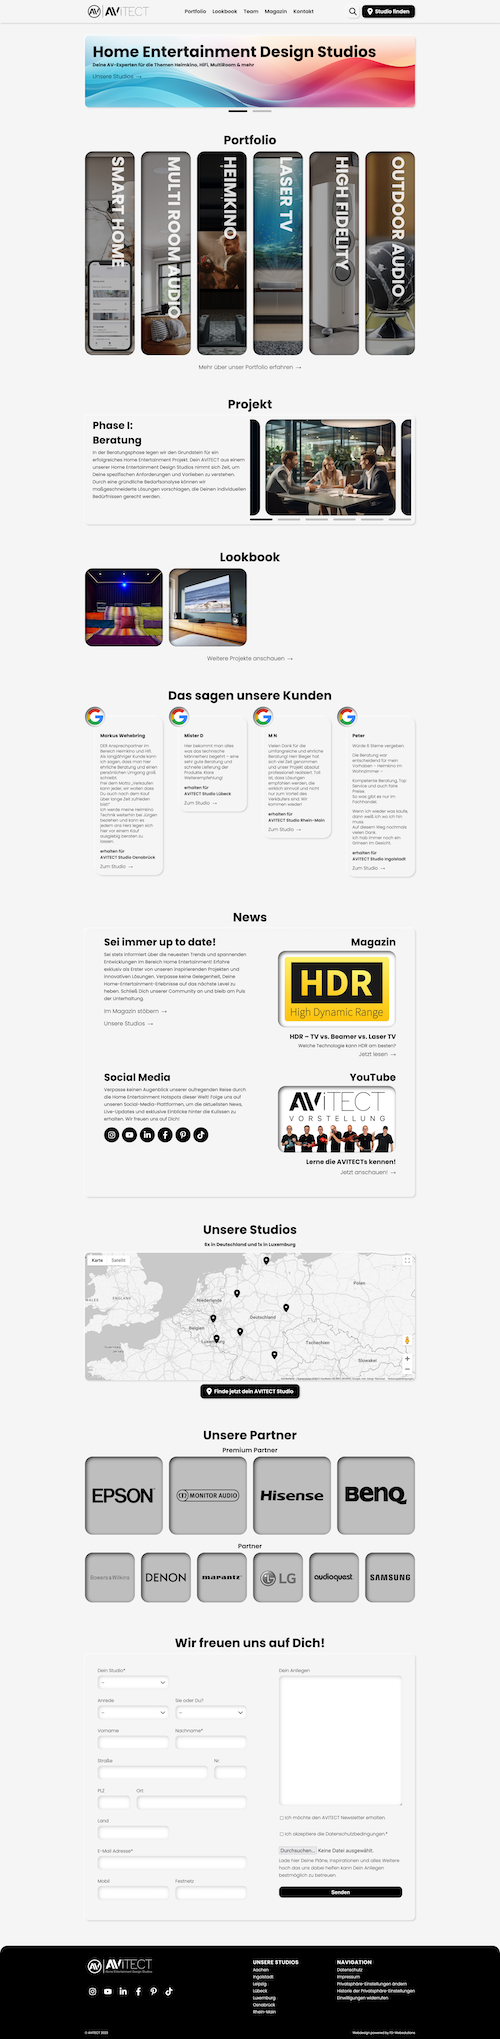 Webdesign Referenz: Screenshot der Startseite von AVITECT